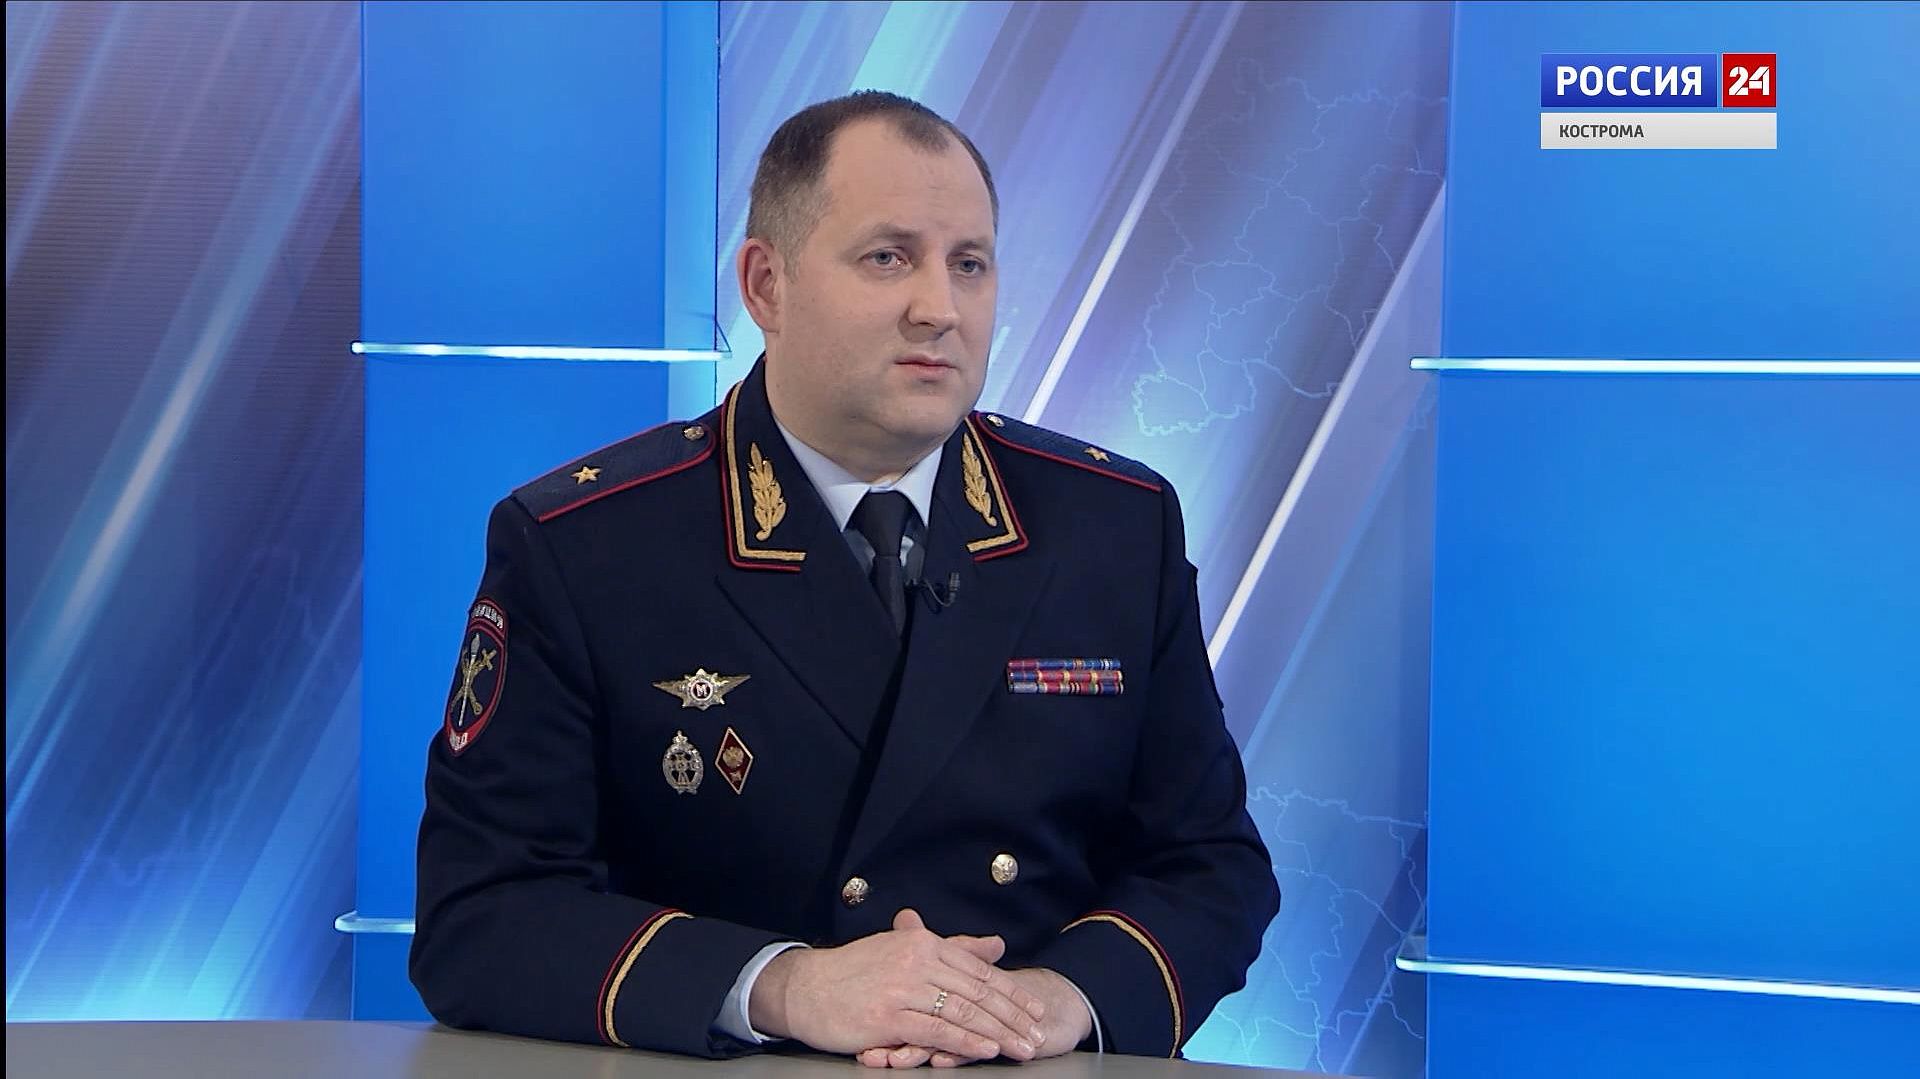 Главный полицейский Костромской области подвёл итоги работы коллег в 2019 году